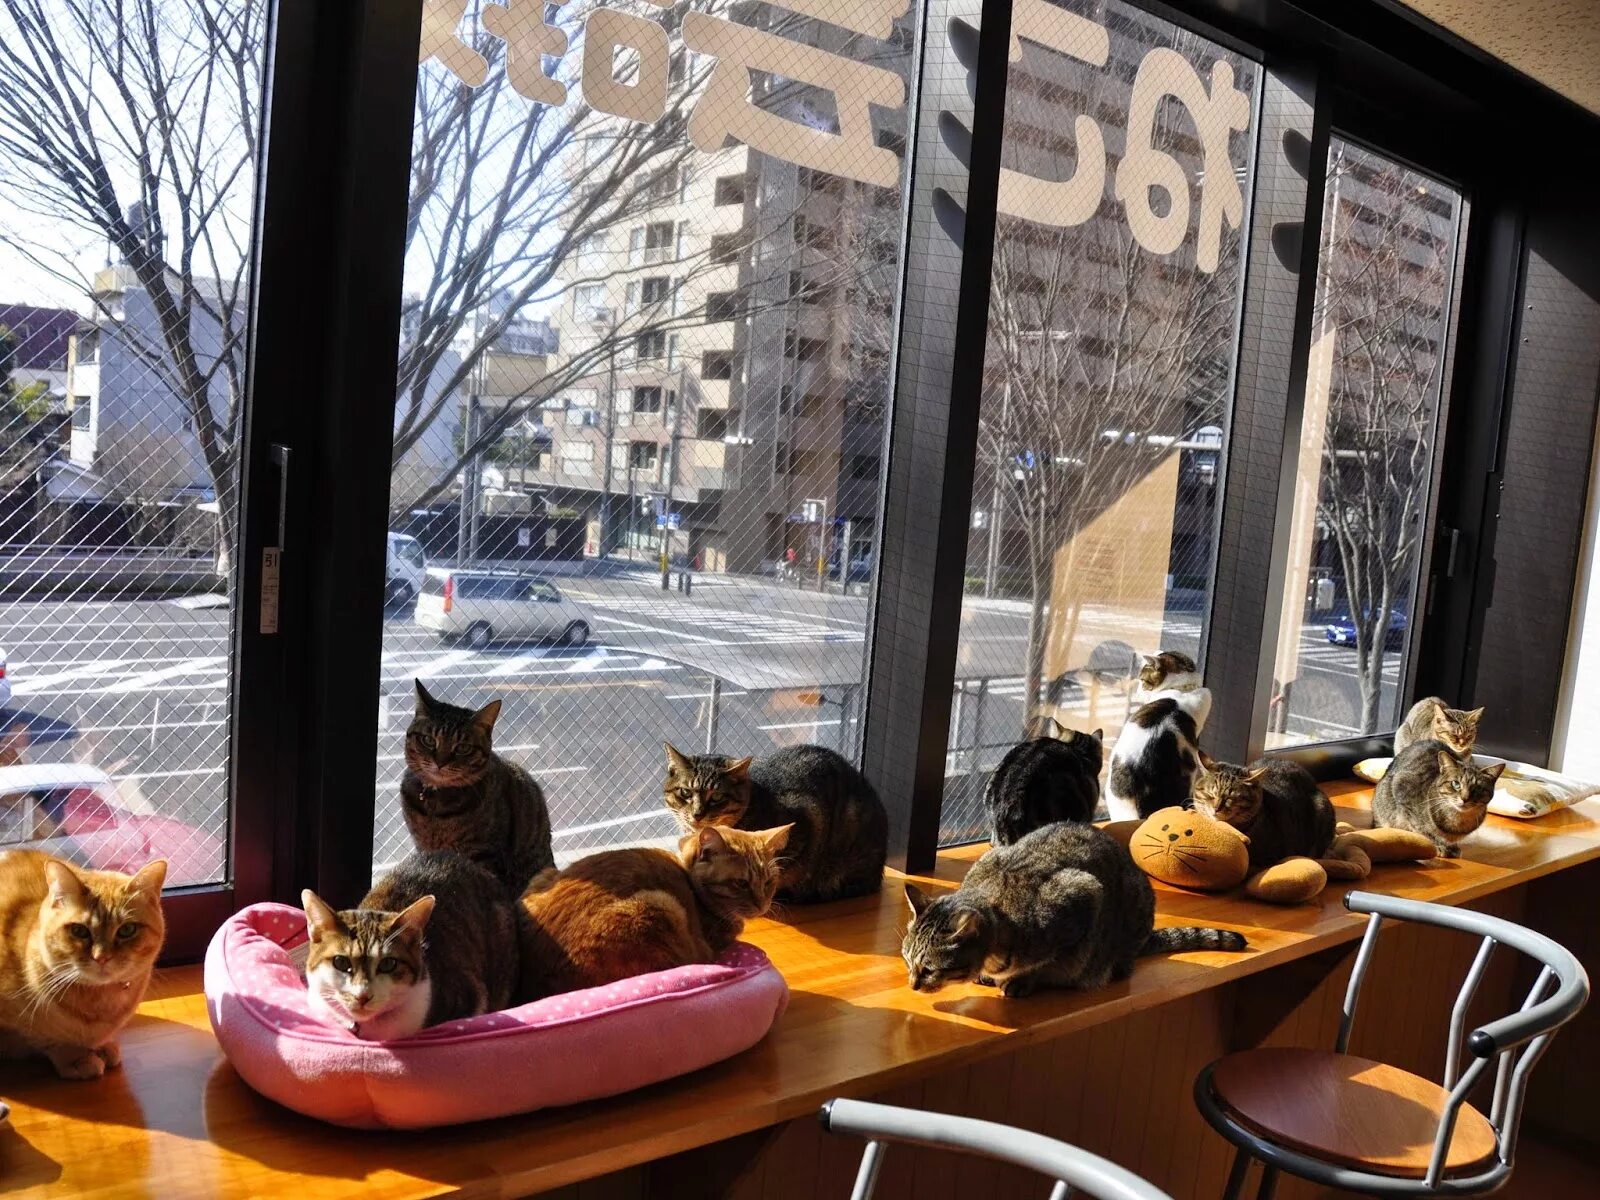 Котова кошка. Кафе коты и люди Москва. Кошачье кафе - "Cat Cafe" в Японии. Кошачье кафе в Японии. Котокафе котики и люди.